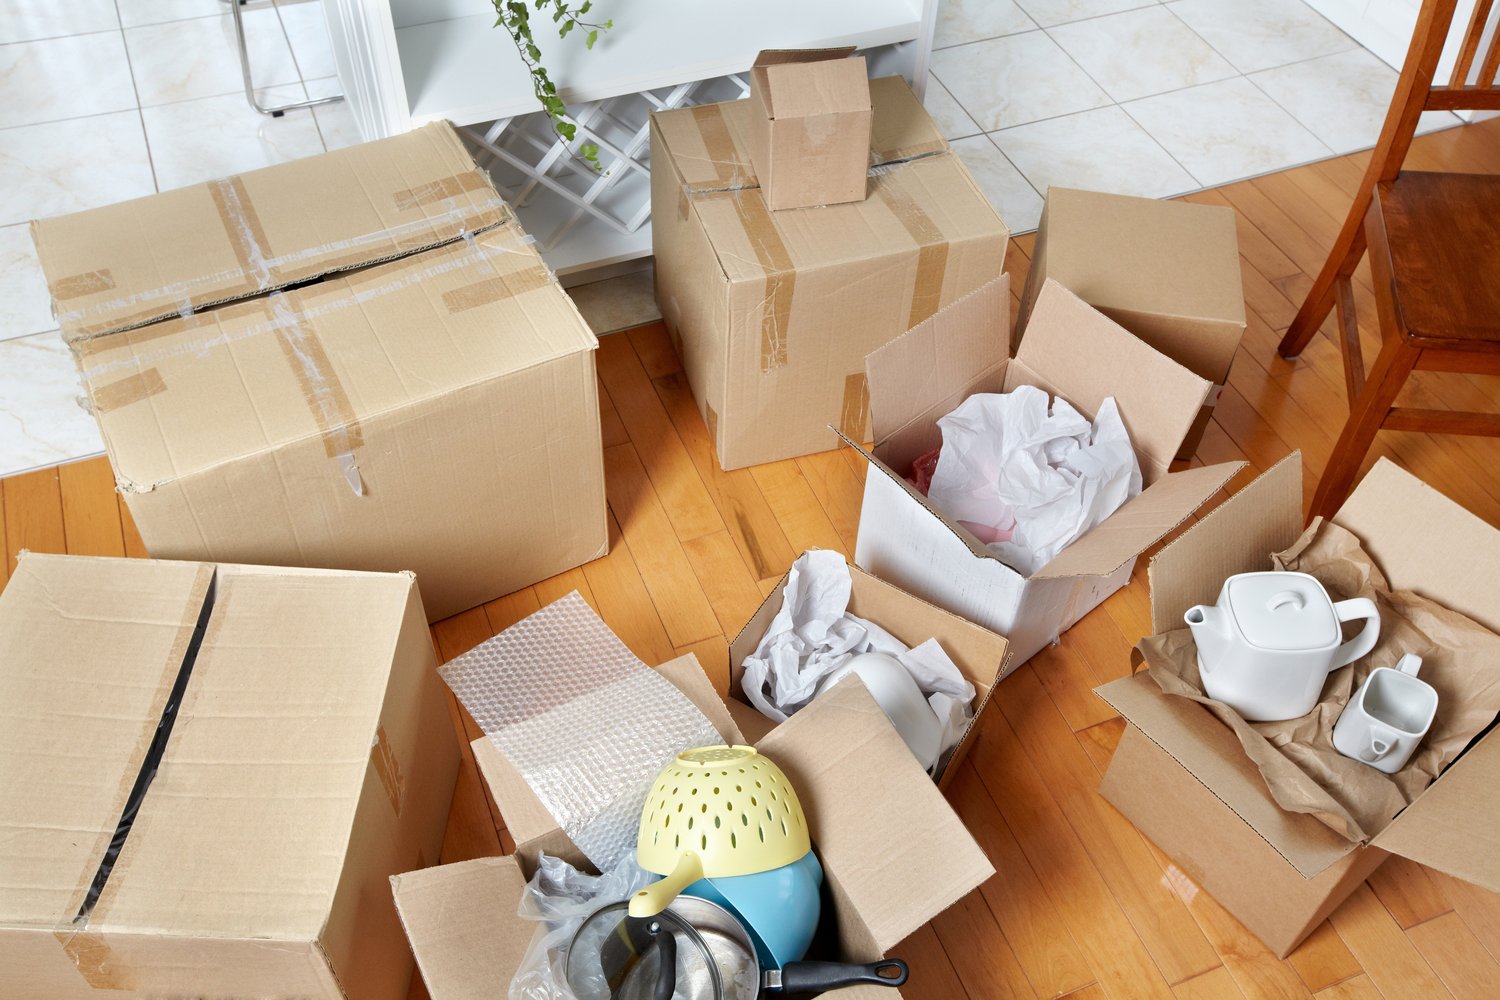 Packaging items. Упаковка вещей для переезда. Коробки для переезда. Вещи в коробках. Картонные коробки с вещами.